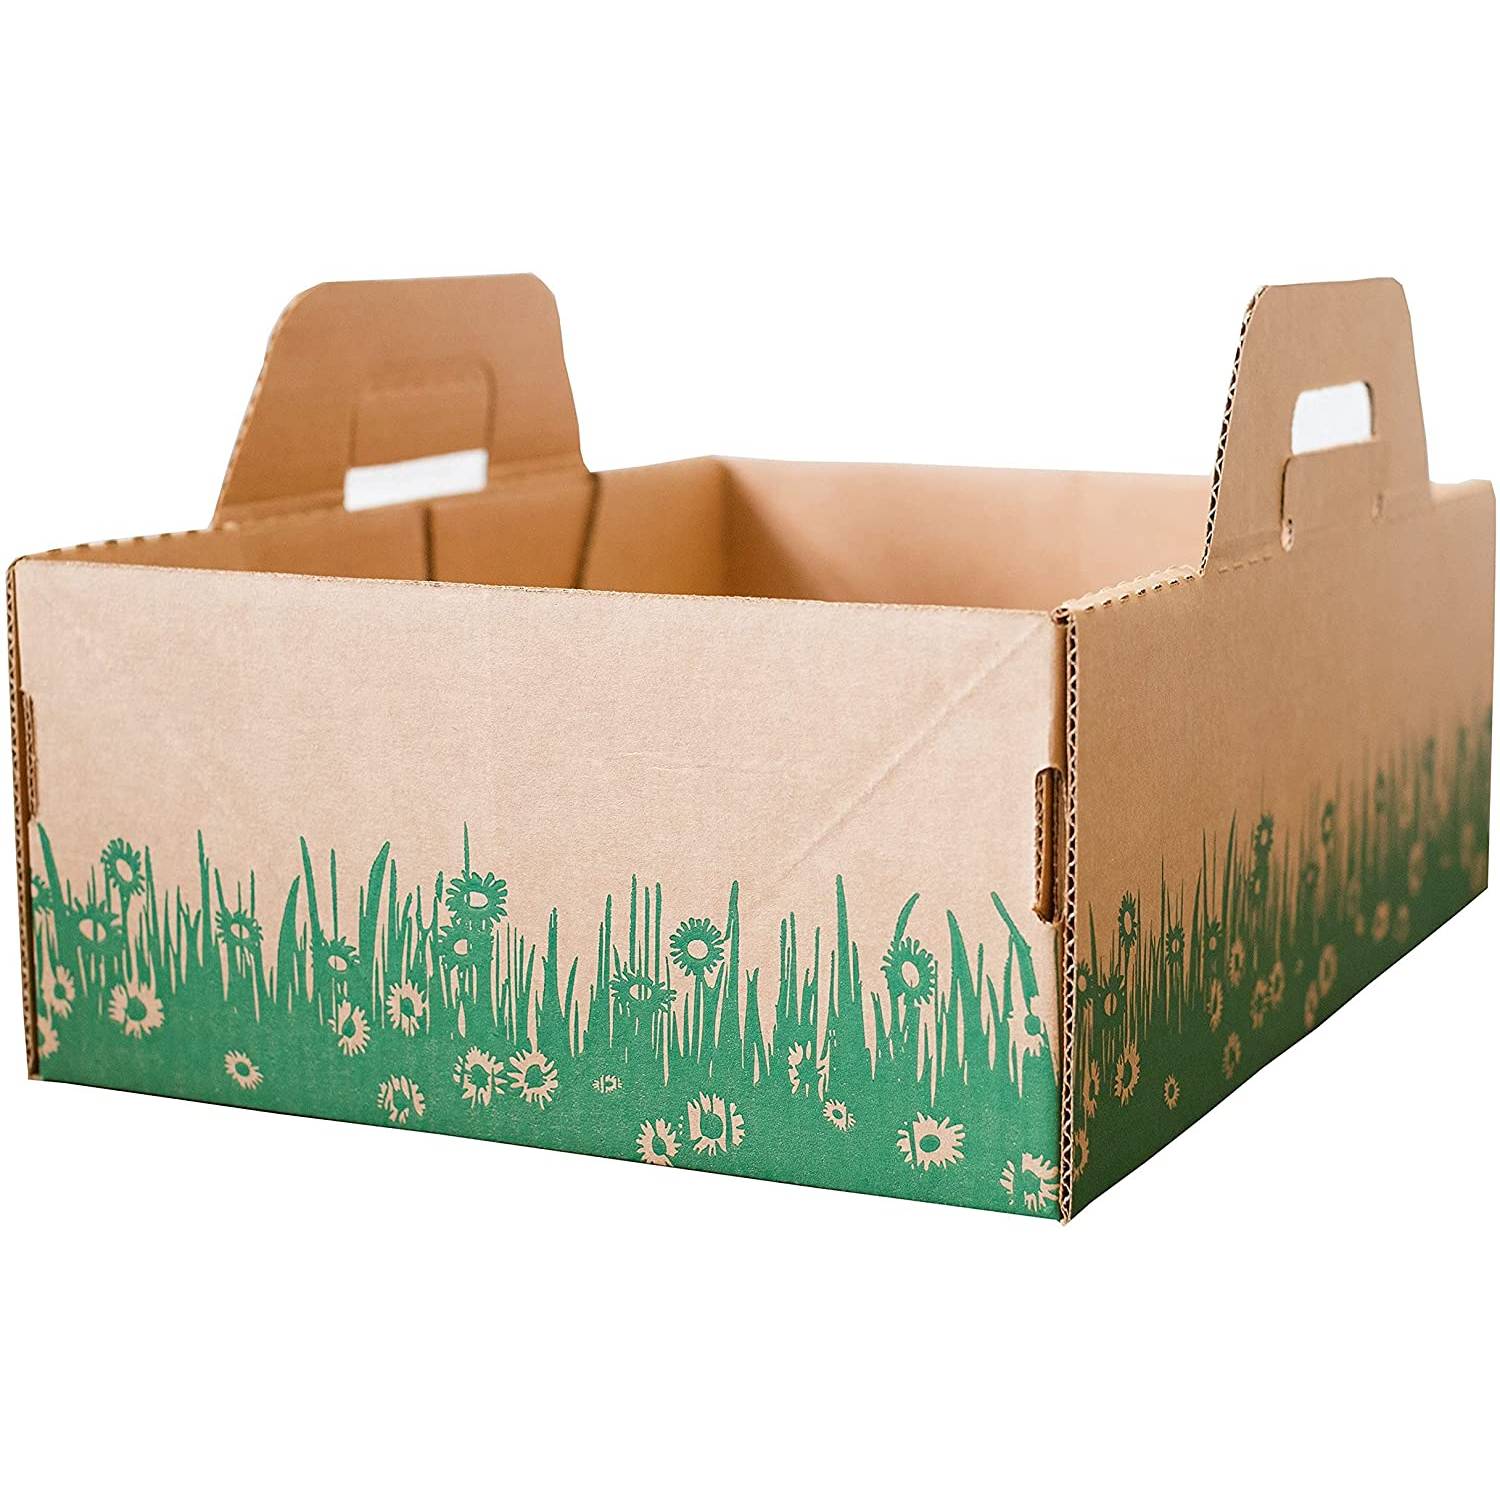 Ten Second Litter Boxes (1)